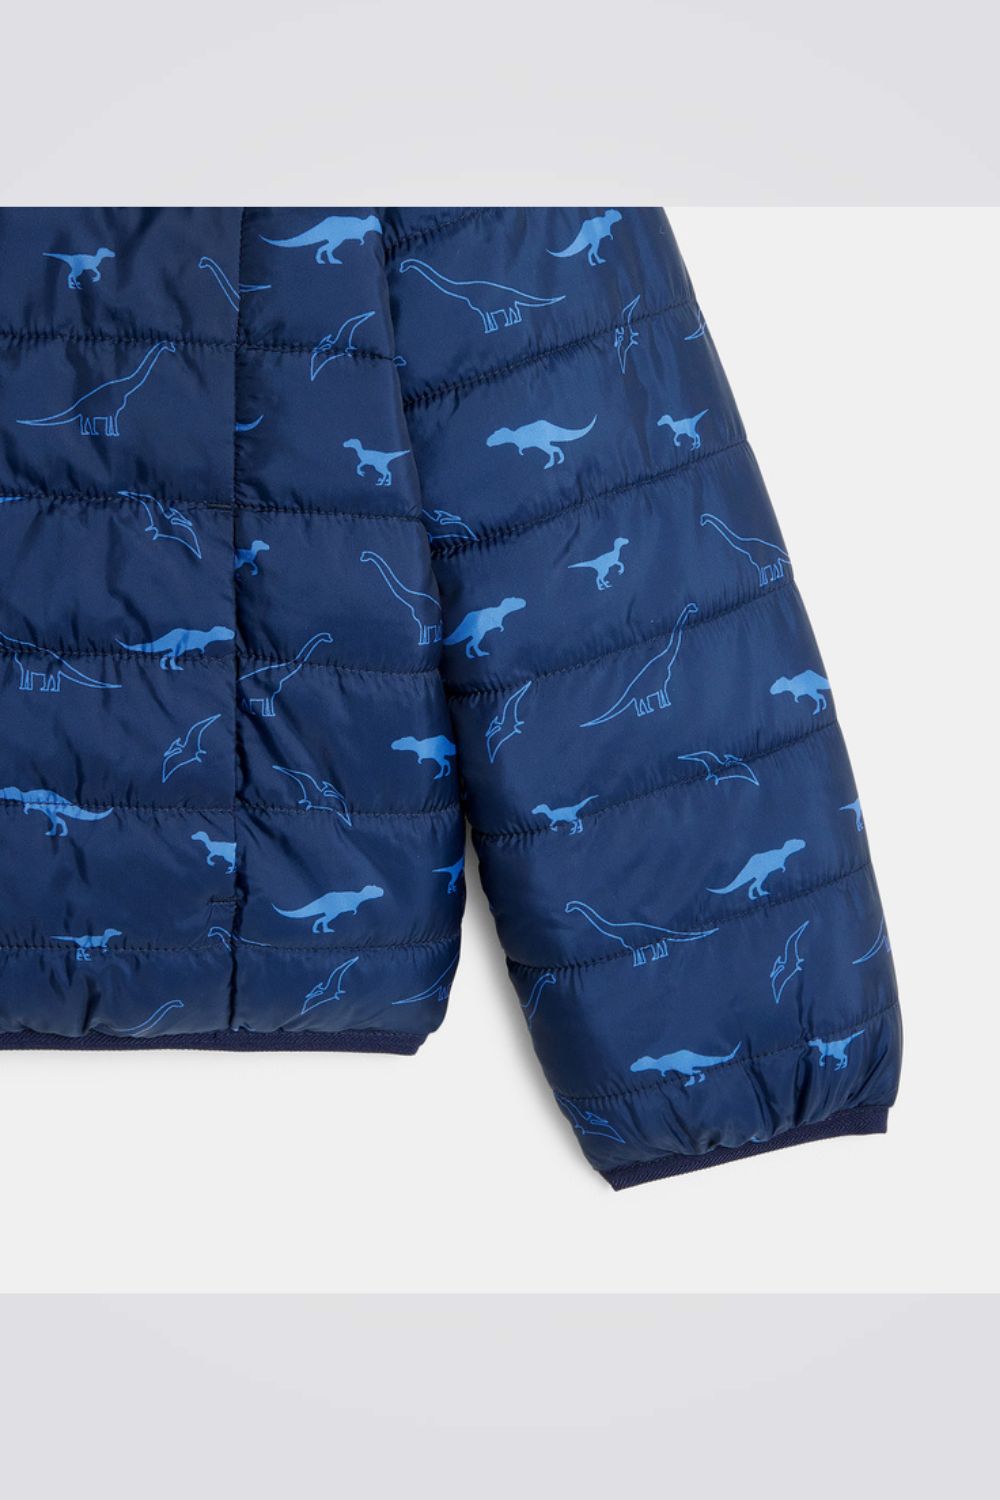 מעיל פוך דו צדדי לילדים בצבע כחול עם הדפס דינוזאורים